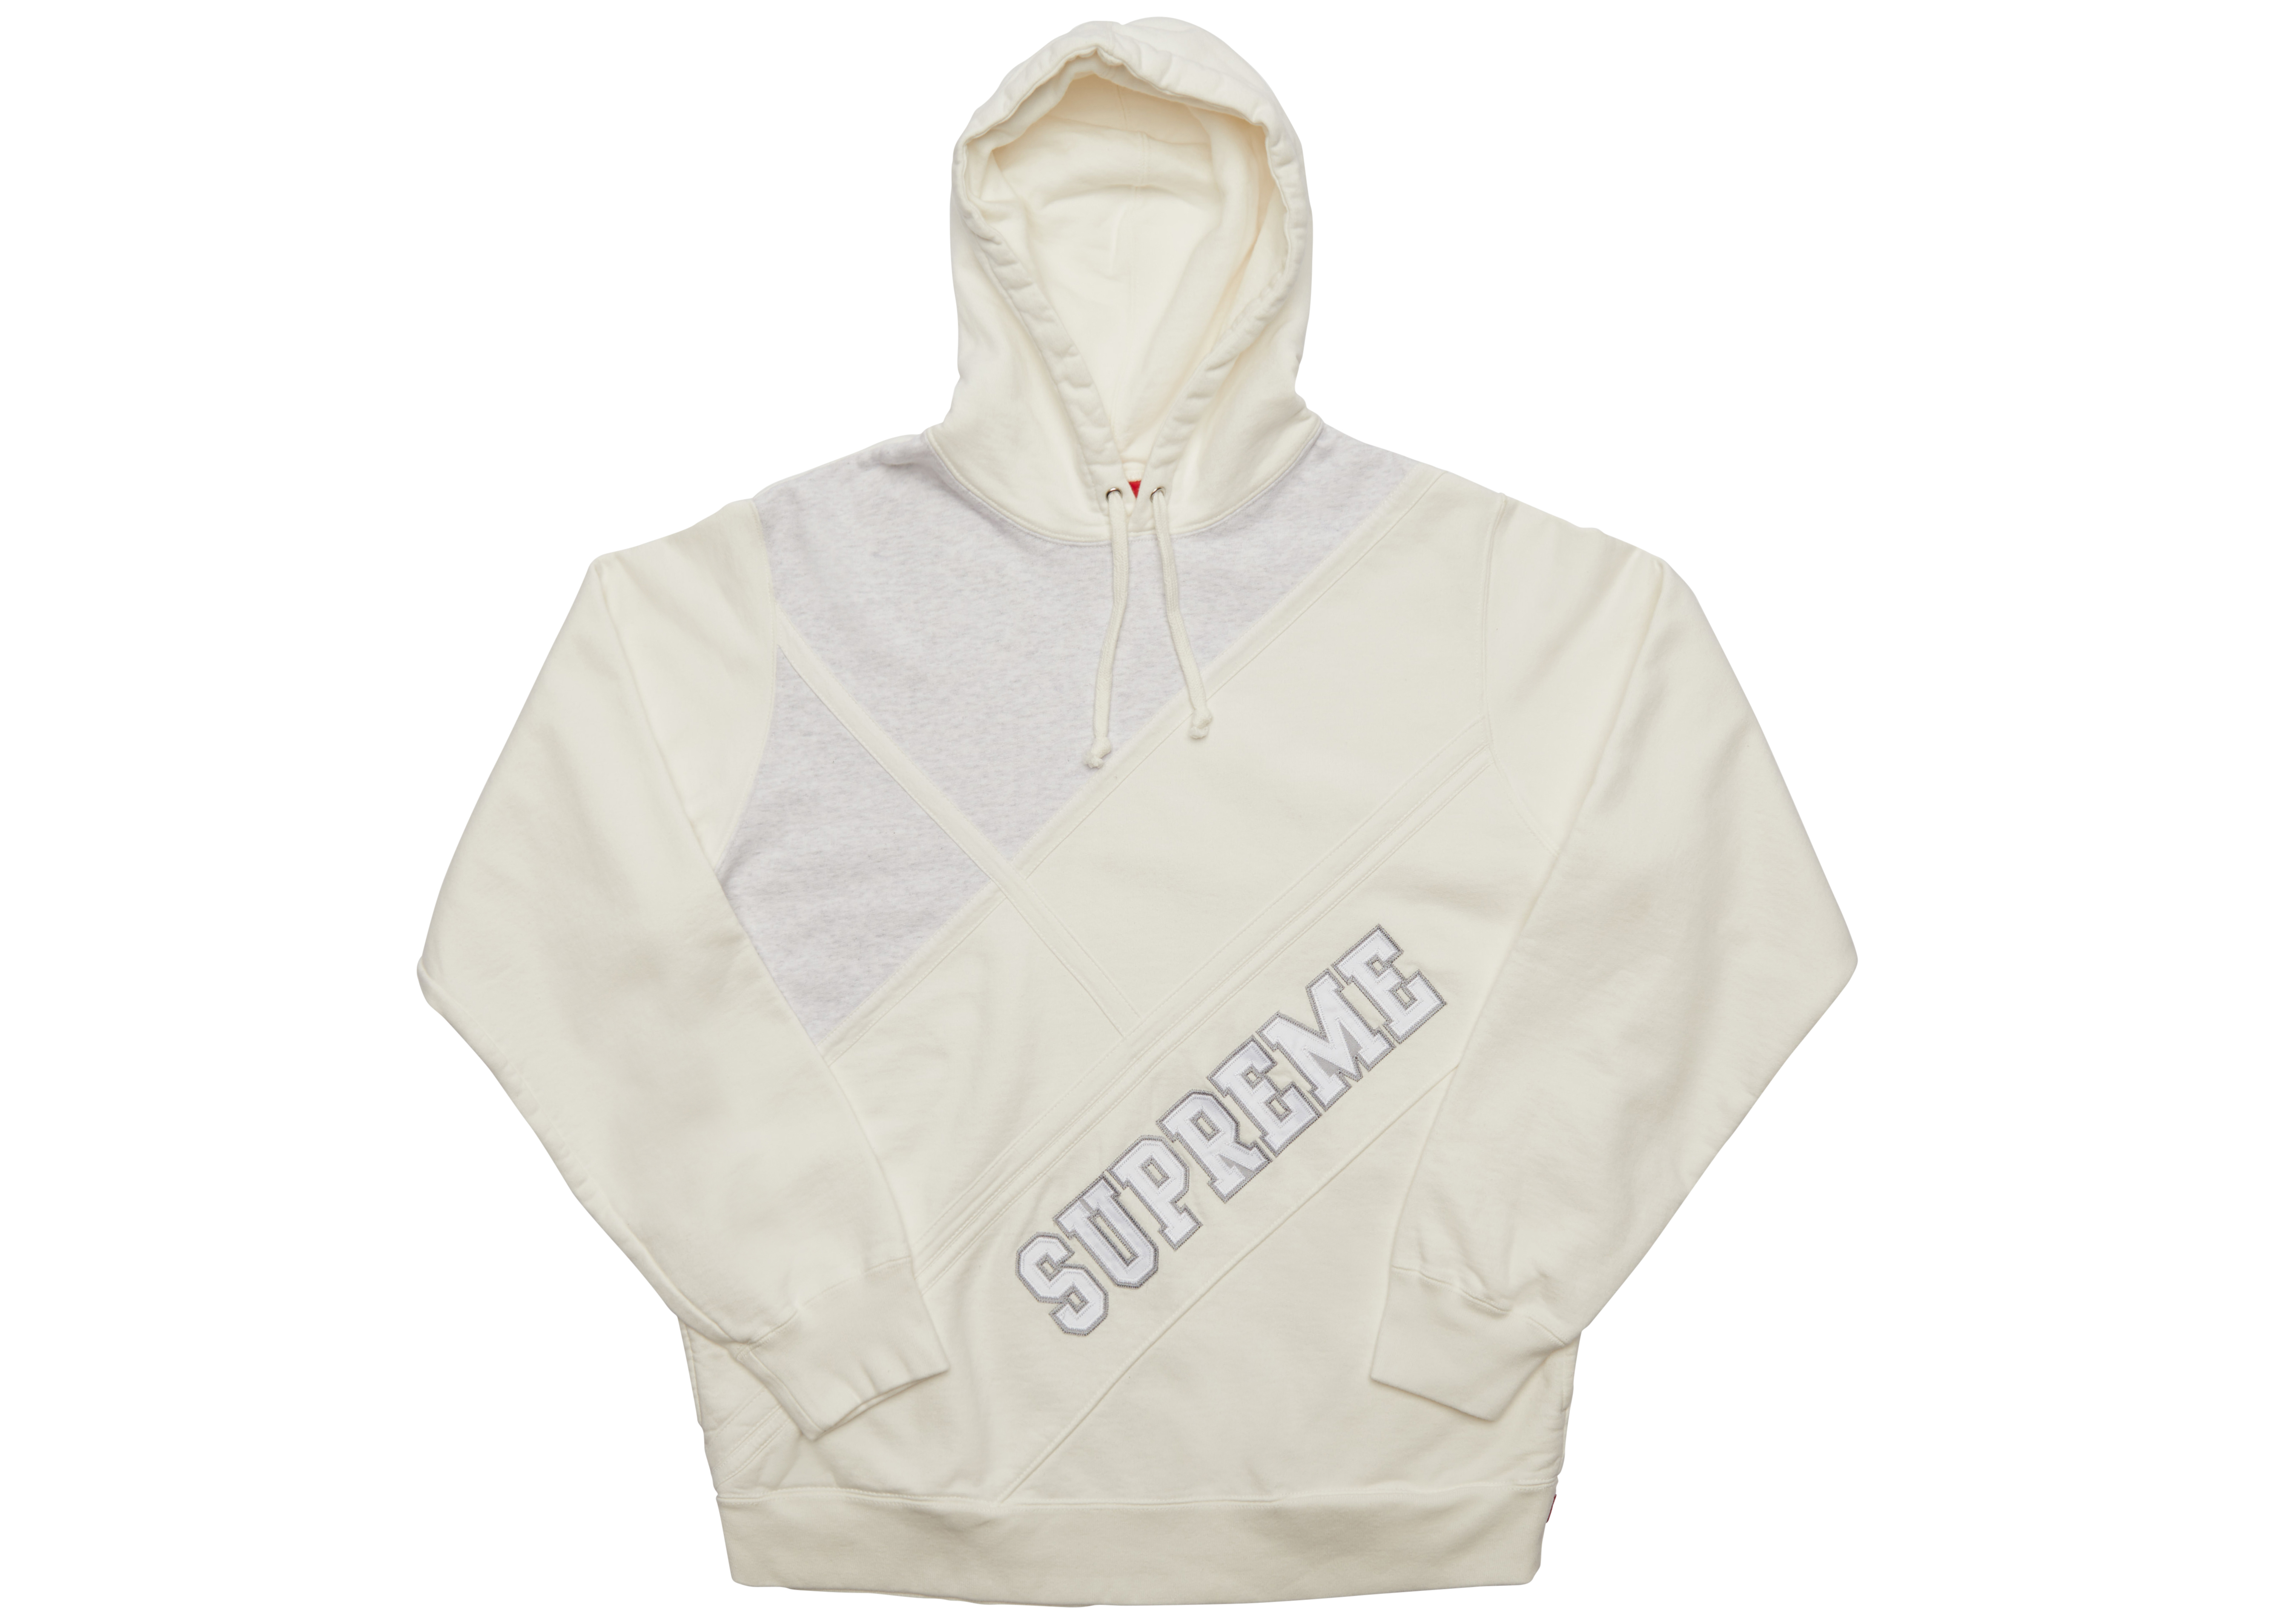 supreme diagonal hooded sweatshirt